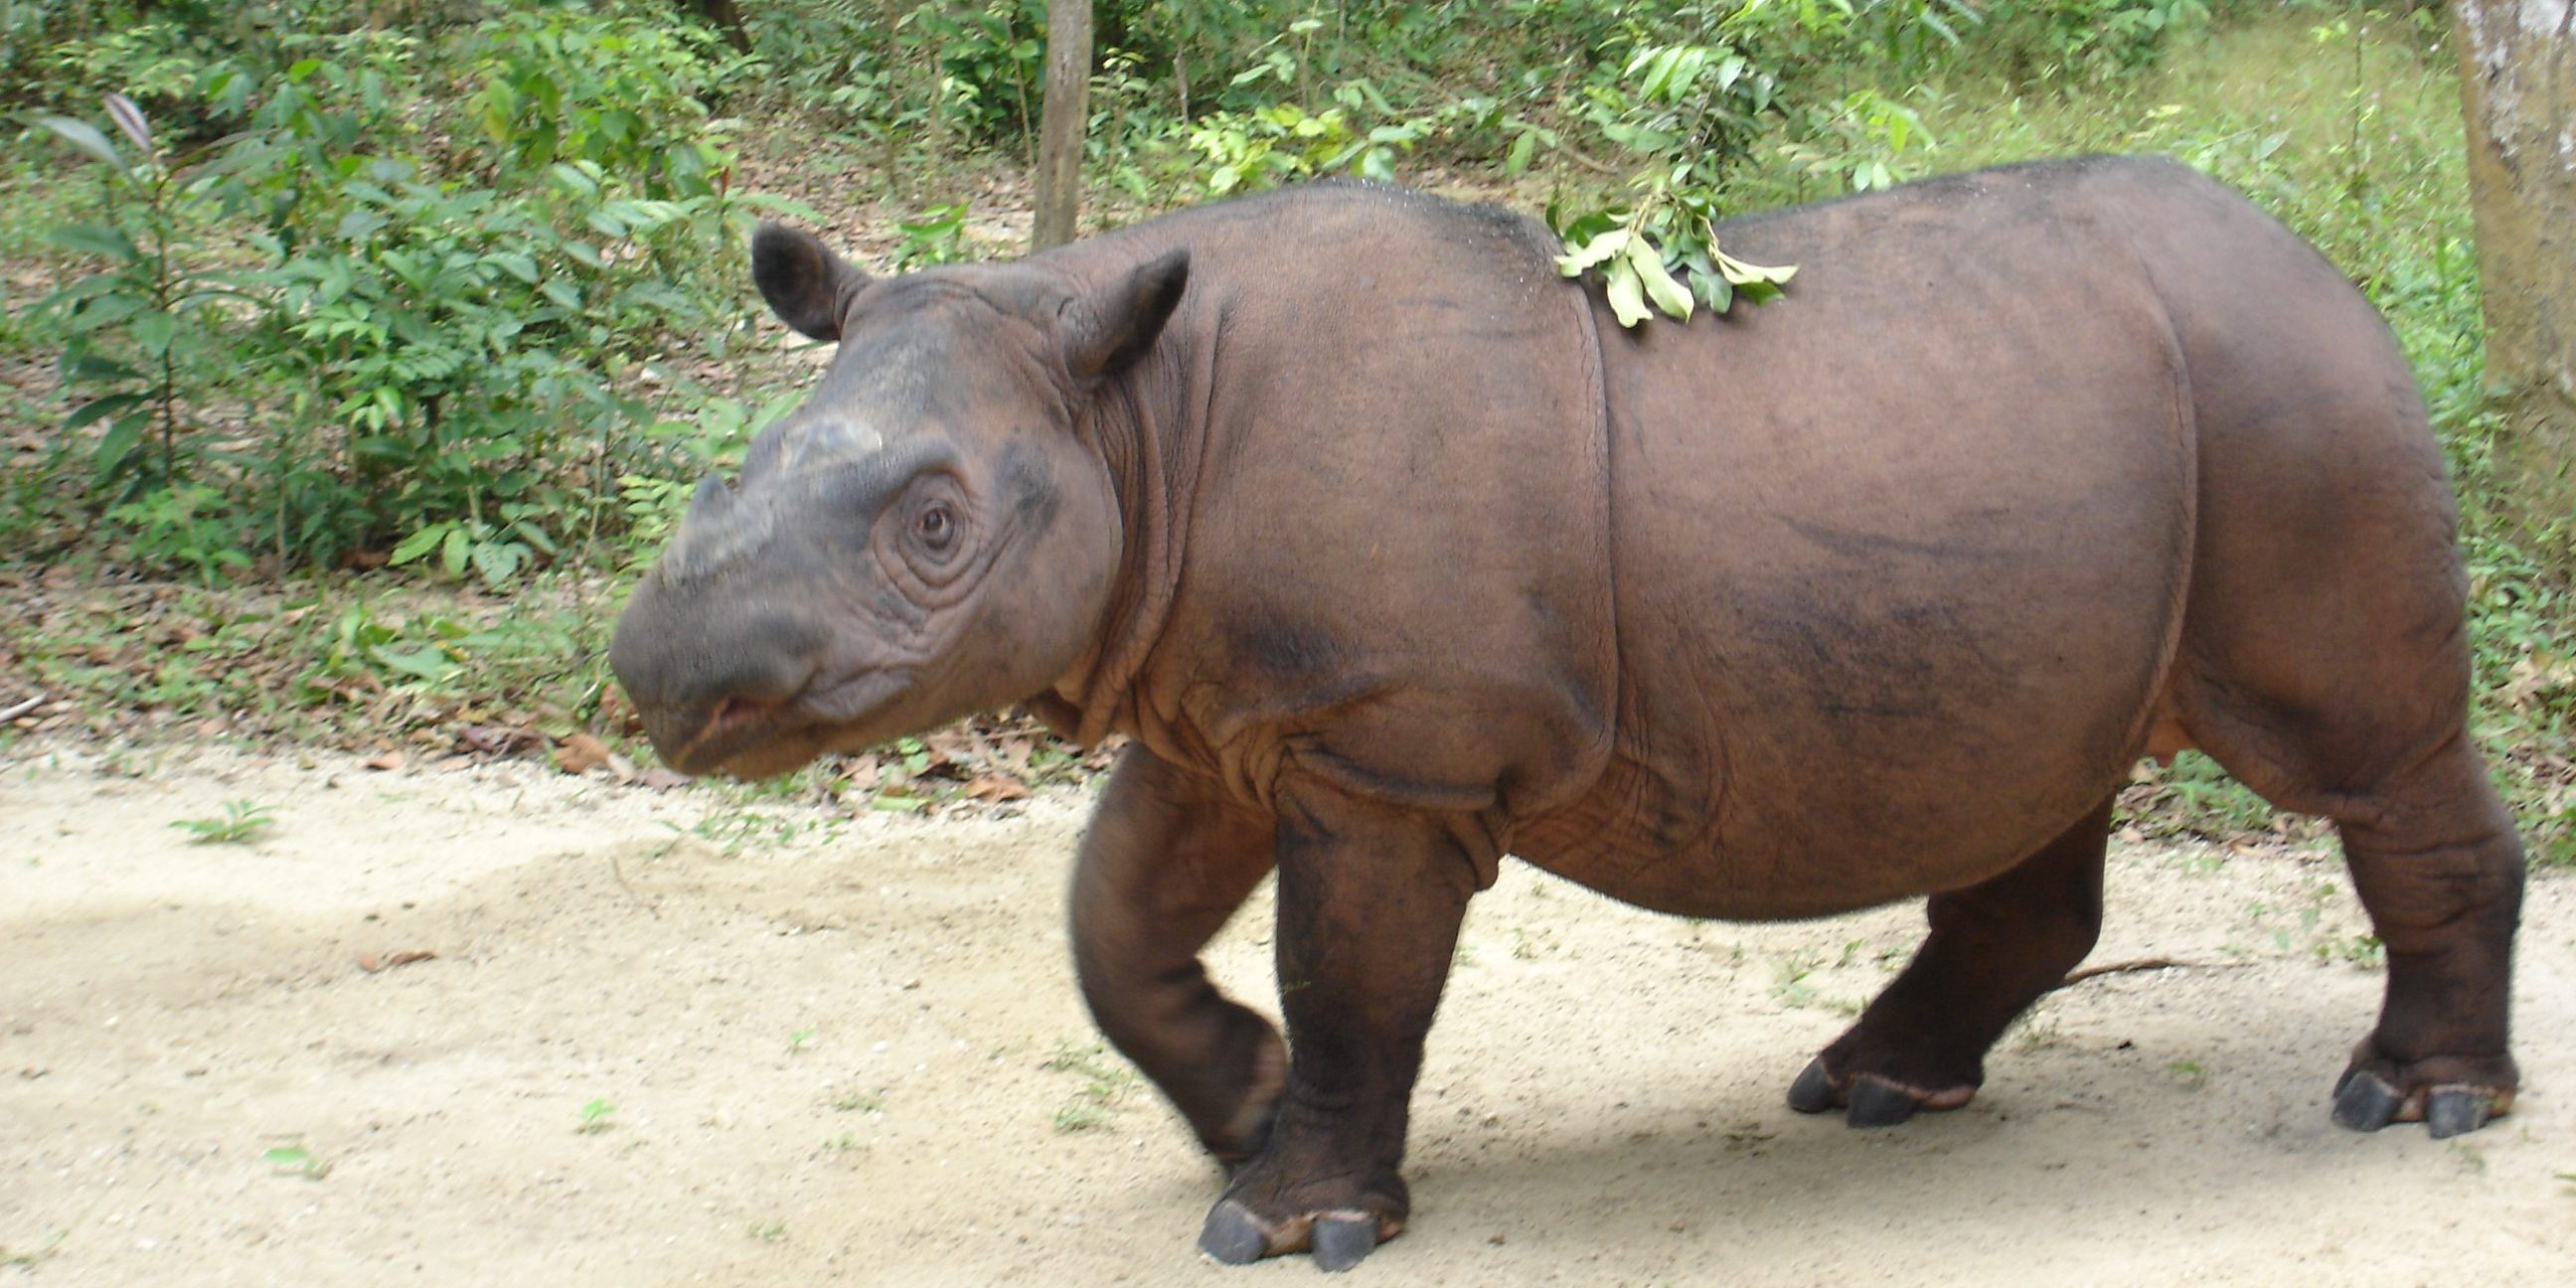 Sumatran rhino extinct in Malaysia